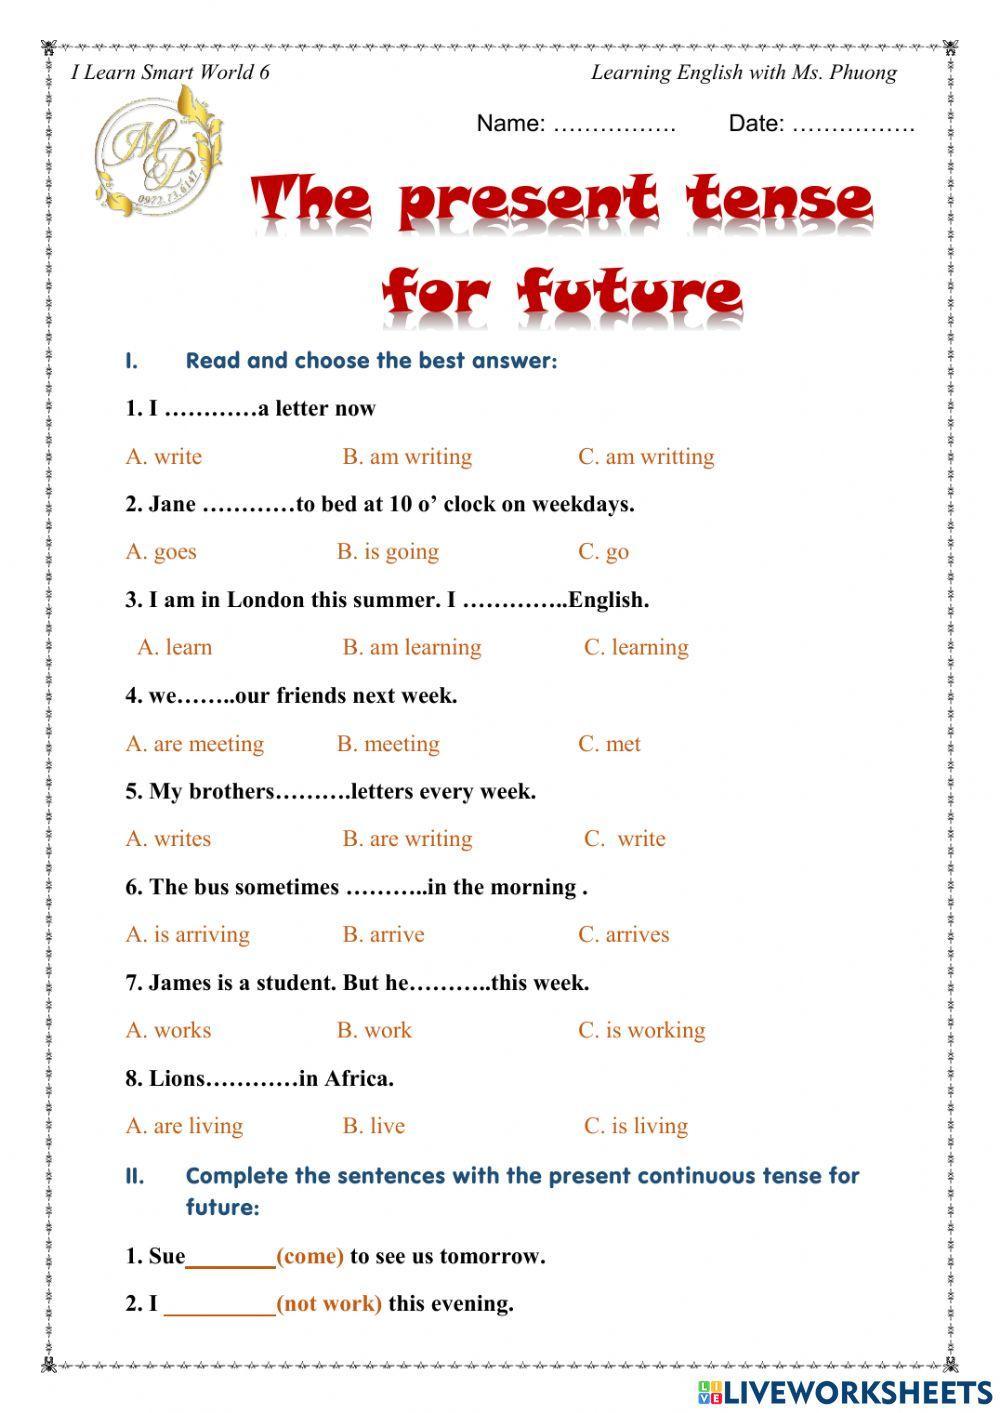 English 6 - Present tense for future